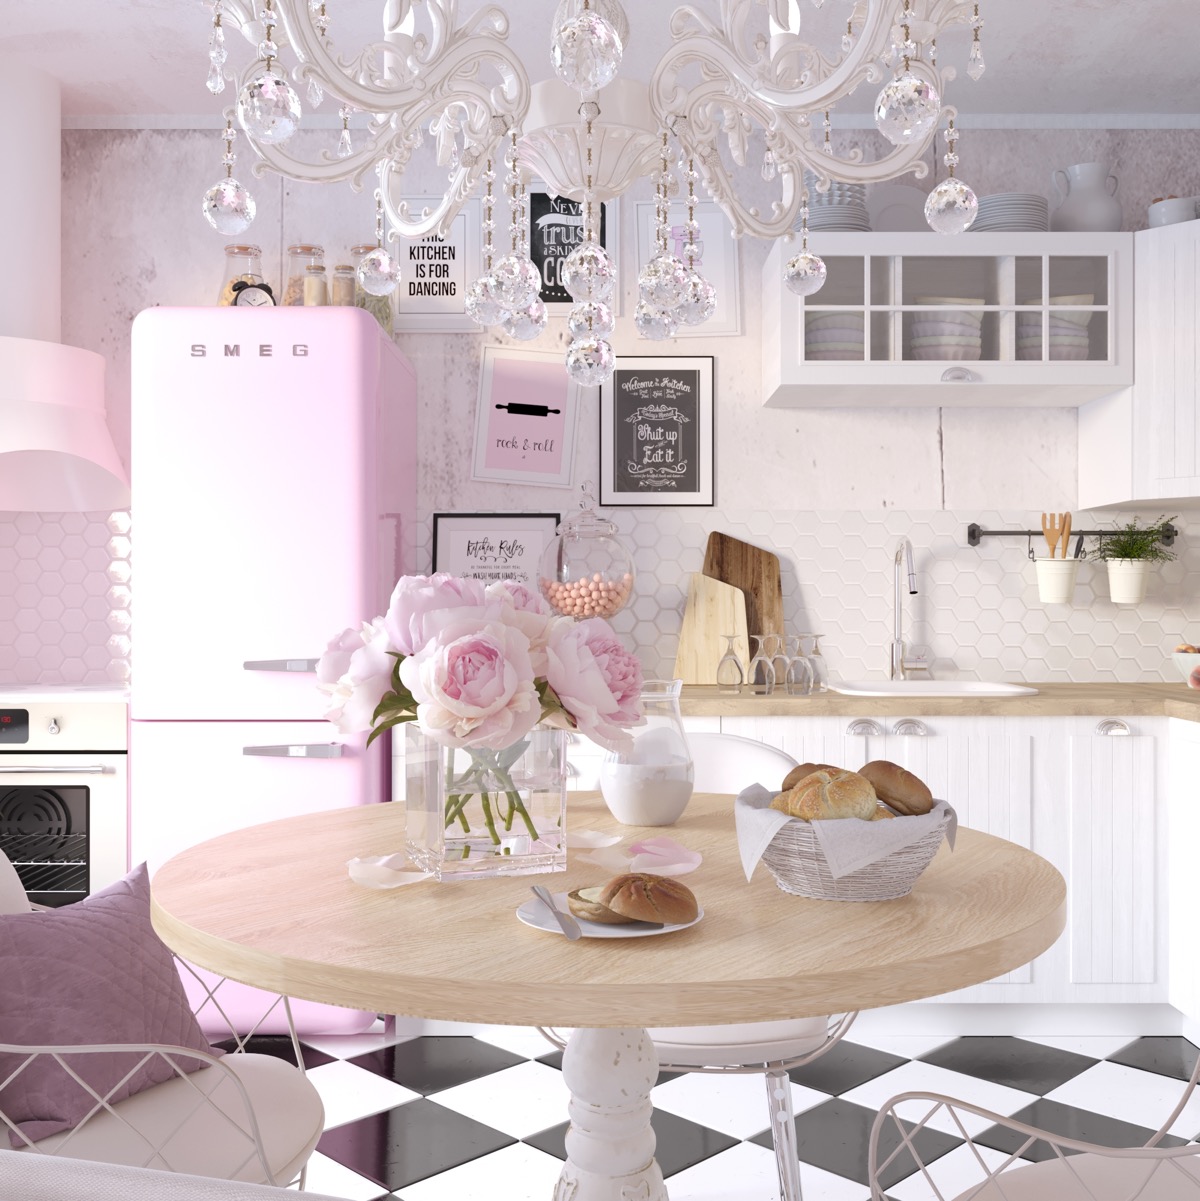 https://www.home-designing.com/wp-content/uploads/2018/08/pink-vintage-kitchen.jpg